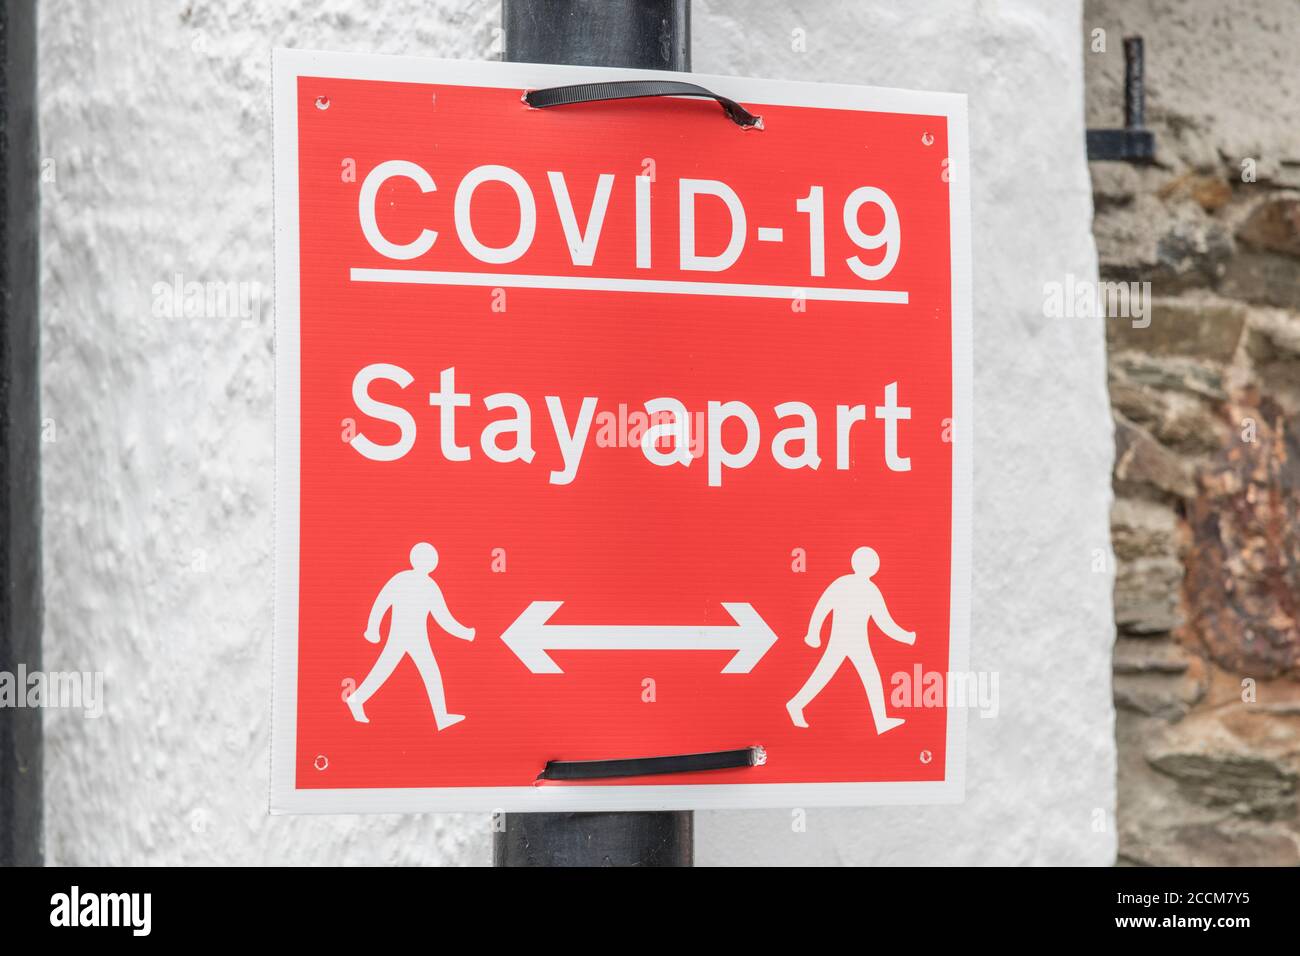 Rouge CV19 / Covid 19 signe d'avertissement social de distance dans la ville cornish de Lostwithiel. Conseils en cas de pandémie, garder en sécurité, et coronavirus UK, Royaume-Uni post-covid Banque D'Images